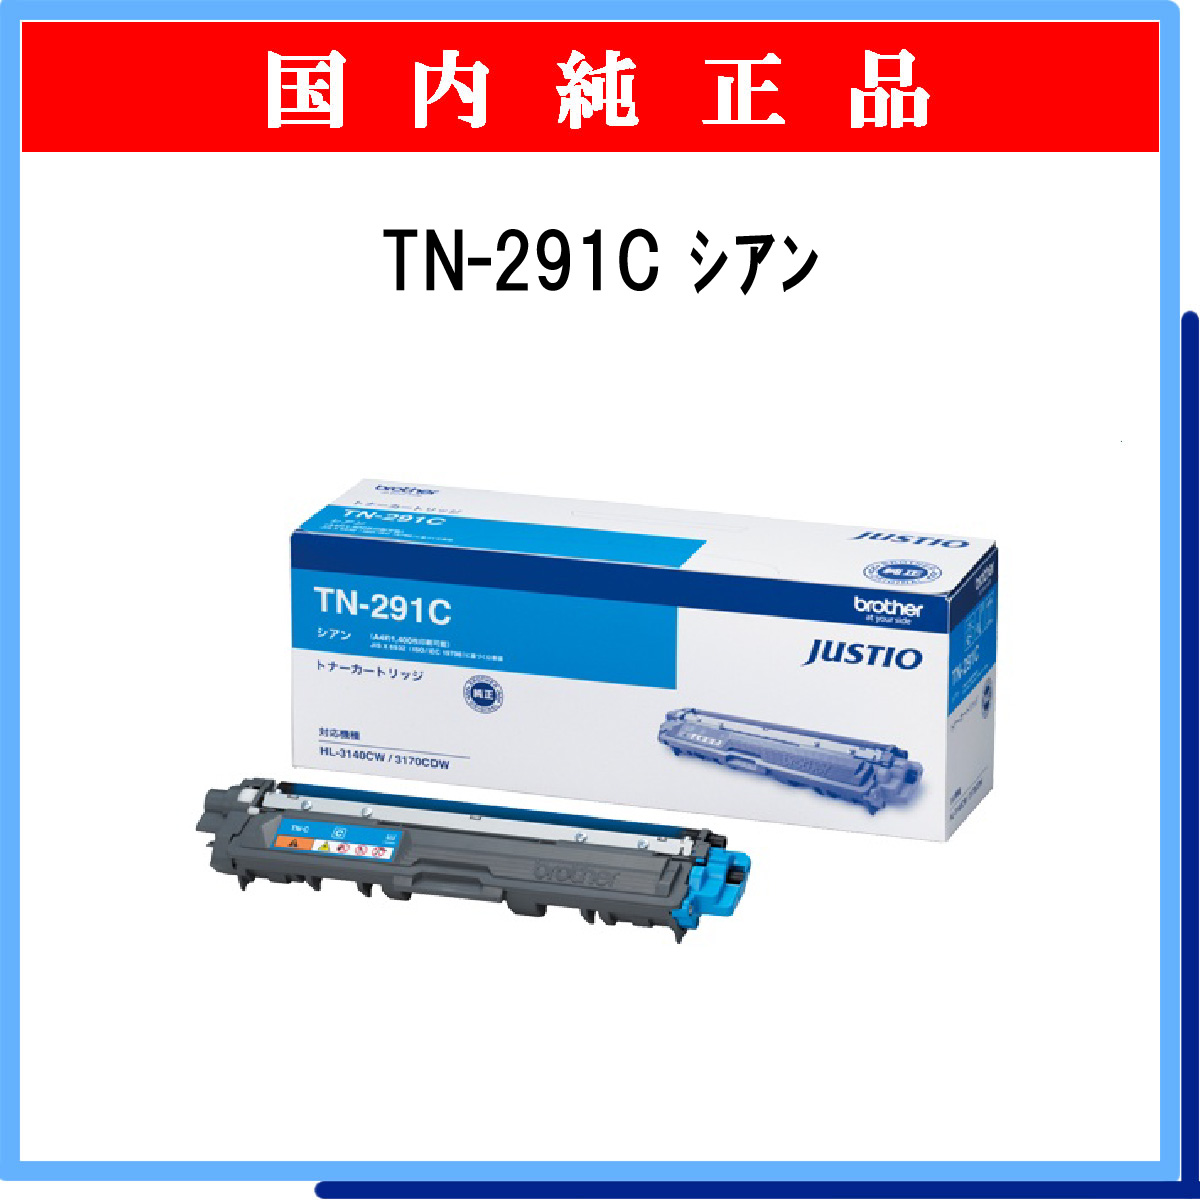 TN-291C 純正